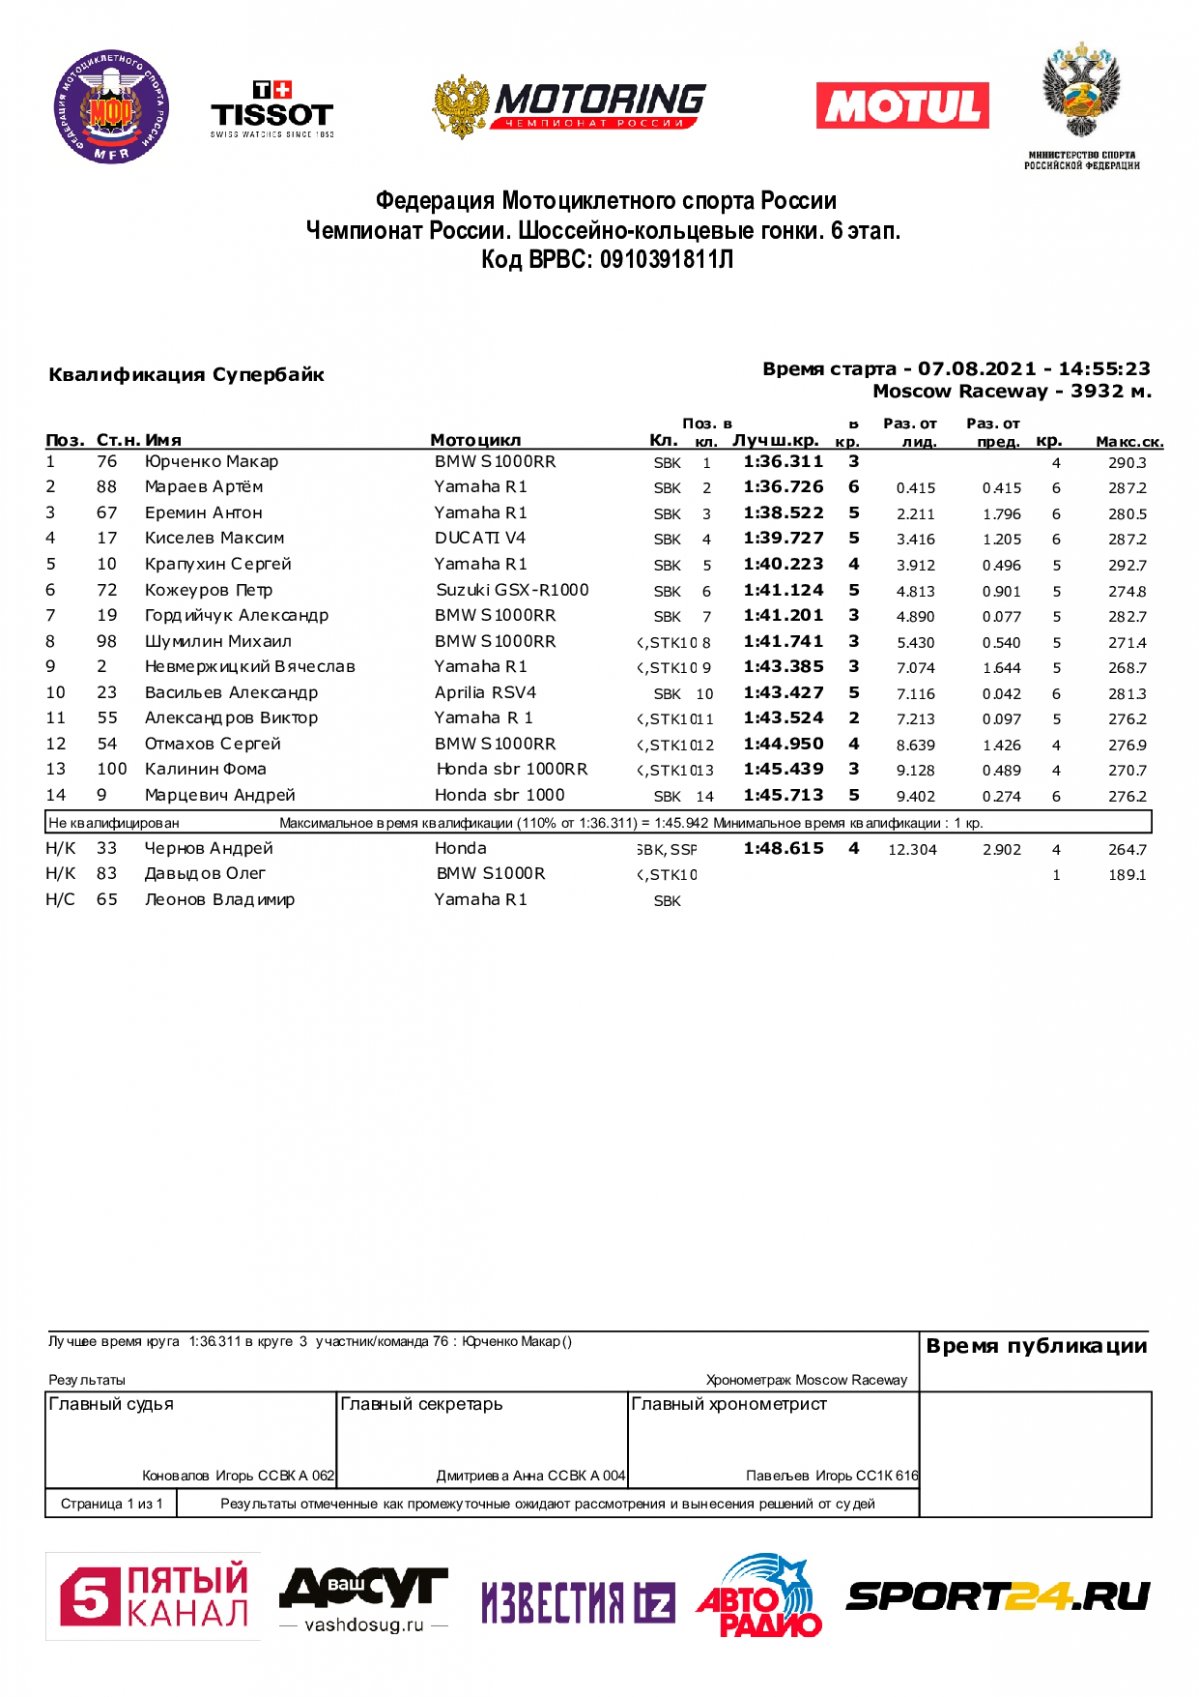 Результаты квалификации 6-го этапа чемпионата России по супербайку, Moscow Raceway